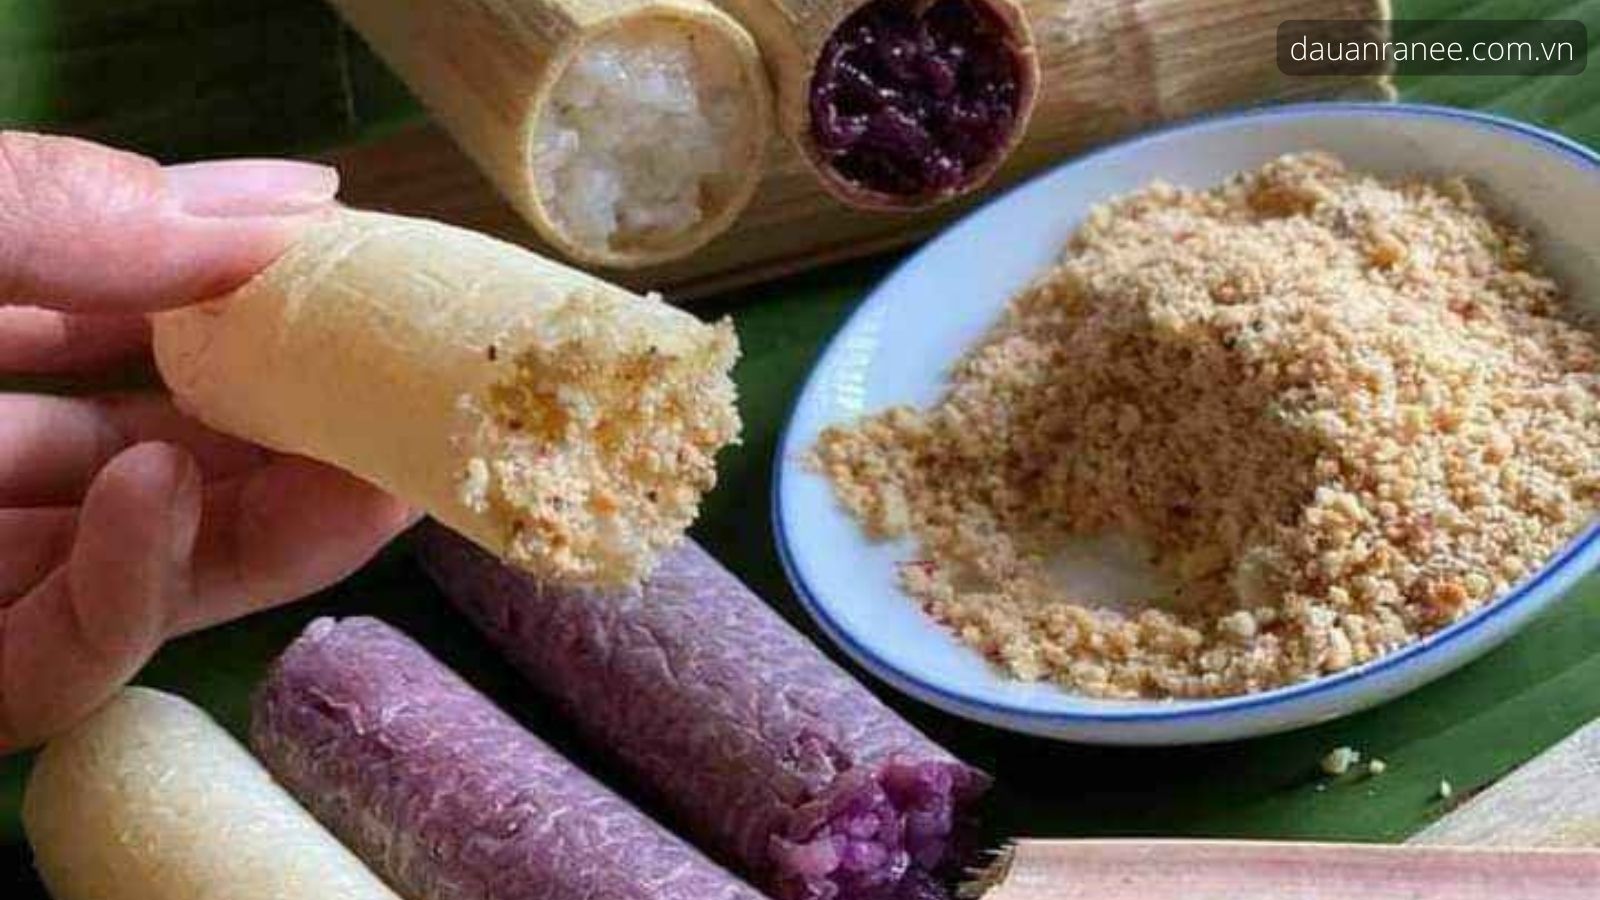 Đặc sản Tuyên Quang Cơm Lam - Thưởng thức món ăn ngon phố Tuyên Quang